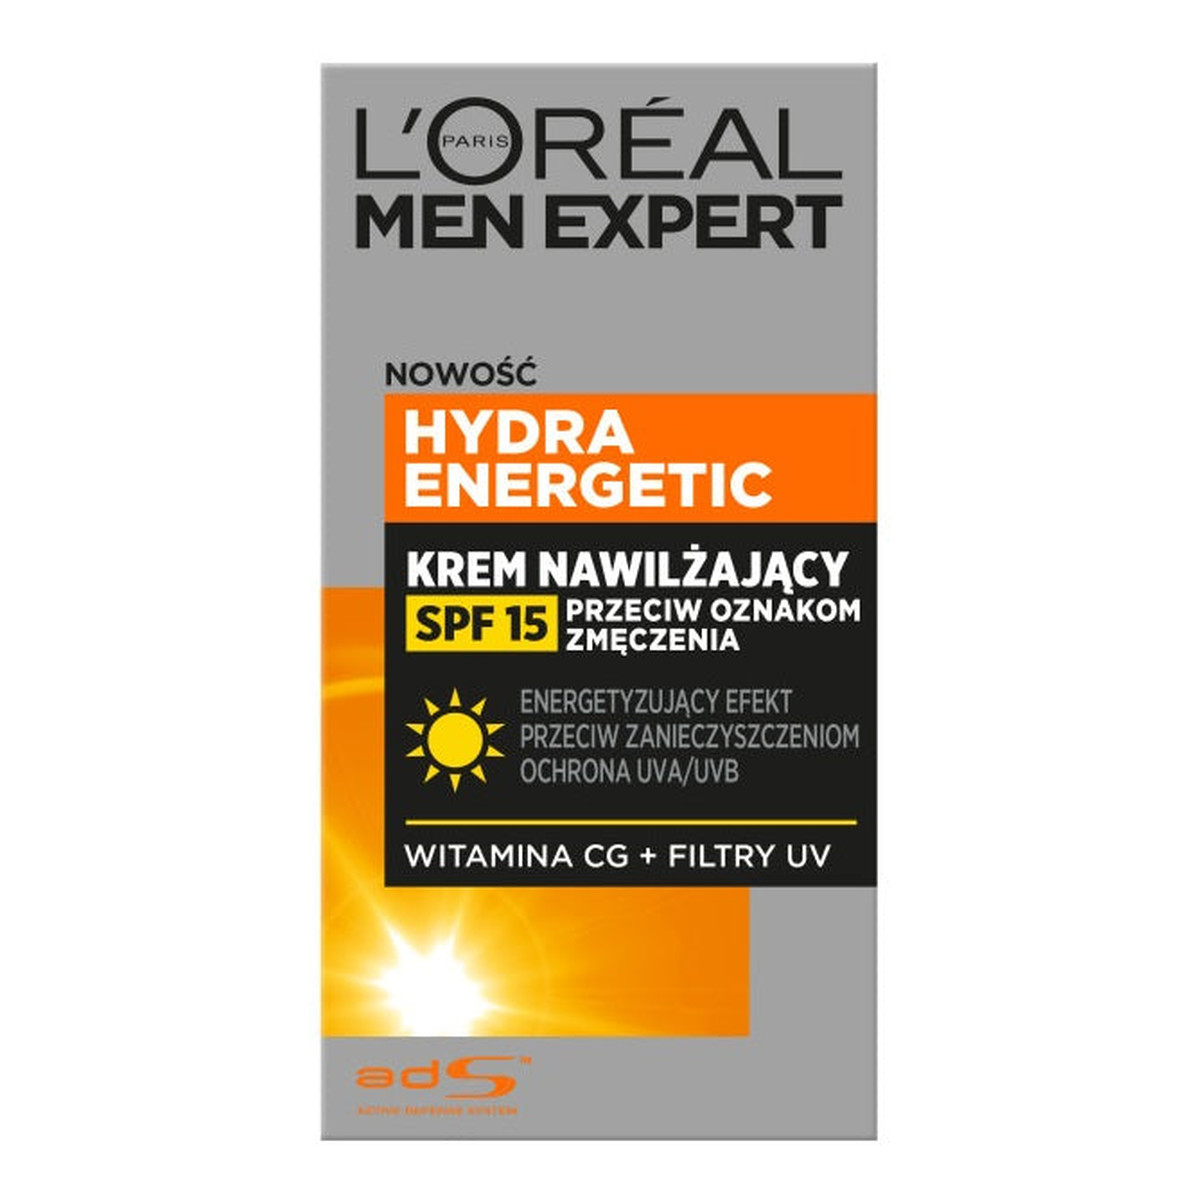 L'Oreal Paris Men Expert Hydra Energetic Krem nawilżający przeciw oznakom zmęczenia SPF15 50ml